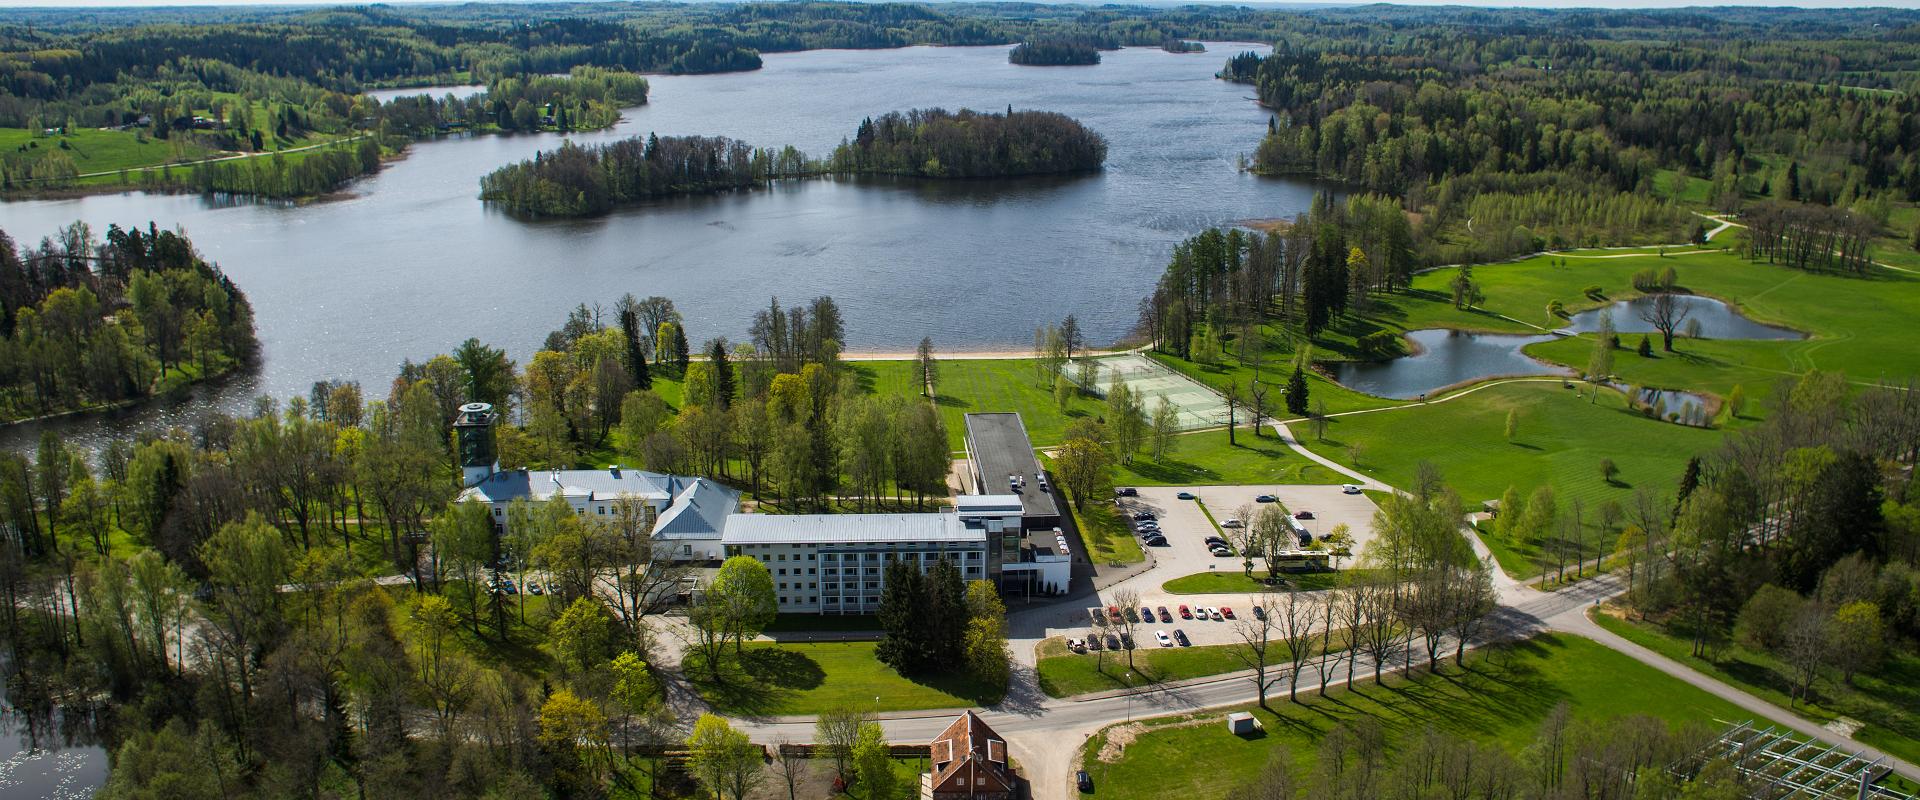 Pühajärve Spa & Holiday Resort with Lake Pühajärv